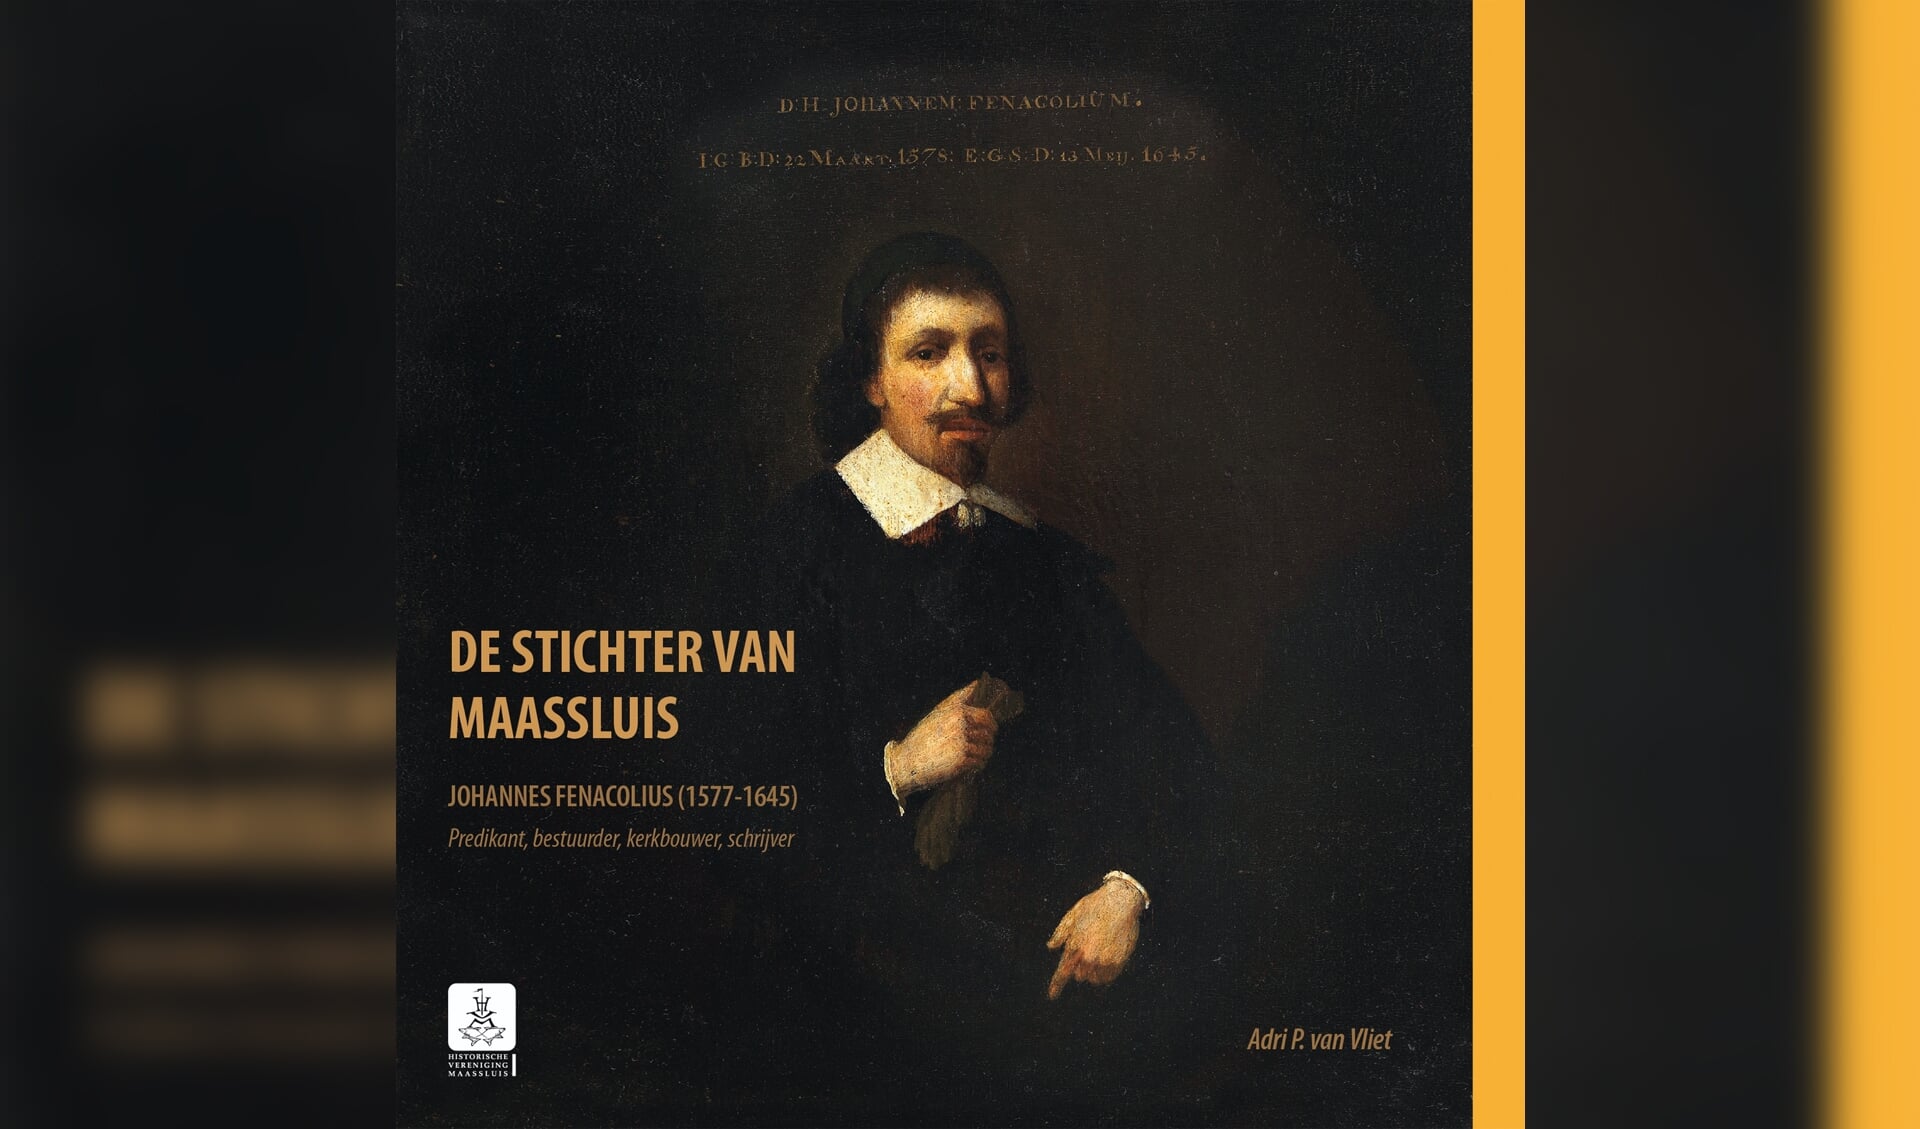 Adri P. van Vliet schreef een uitgebreide biografie over de stichter van Maassluis.